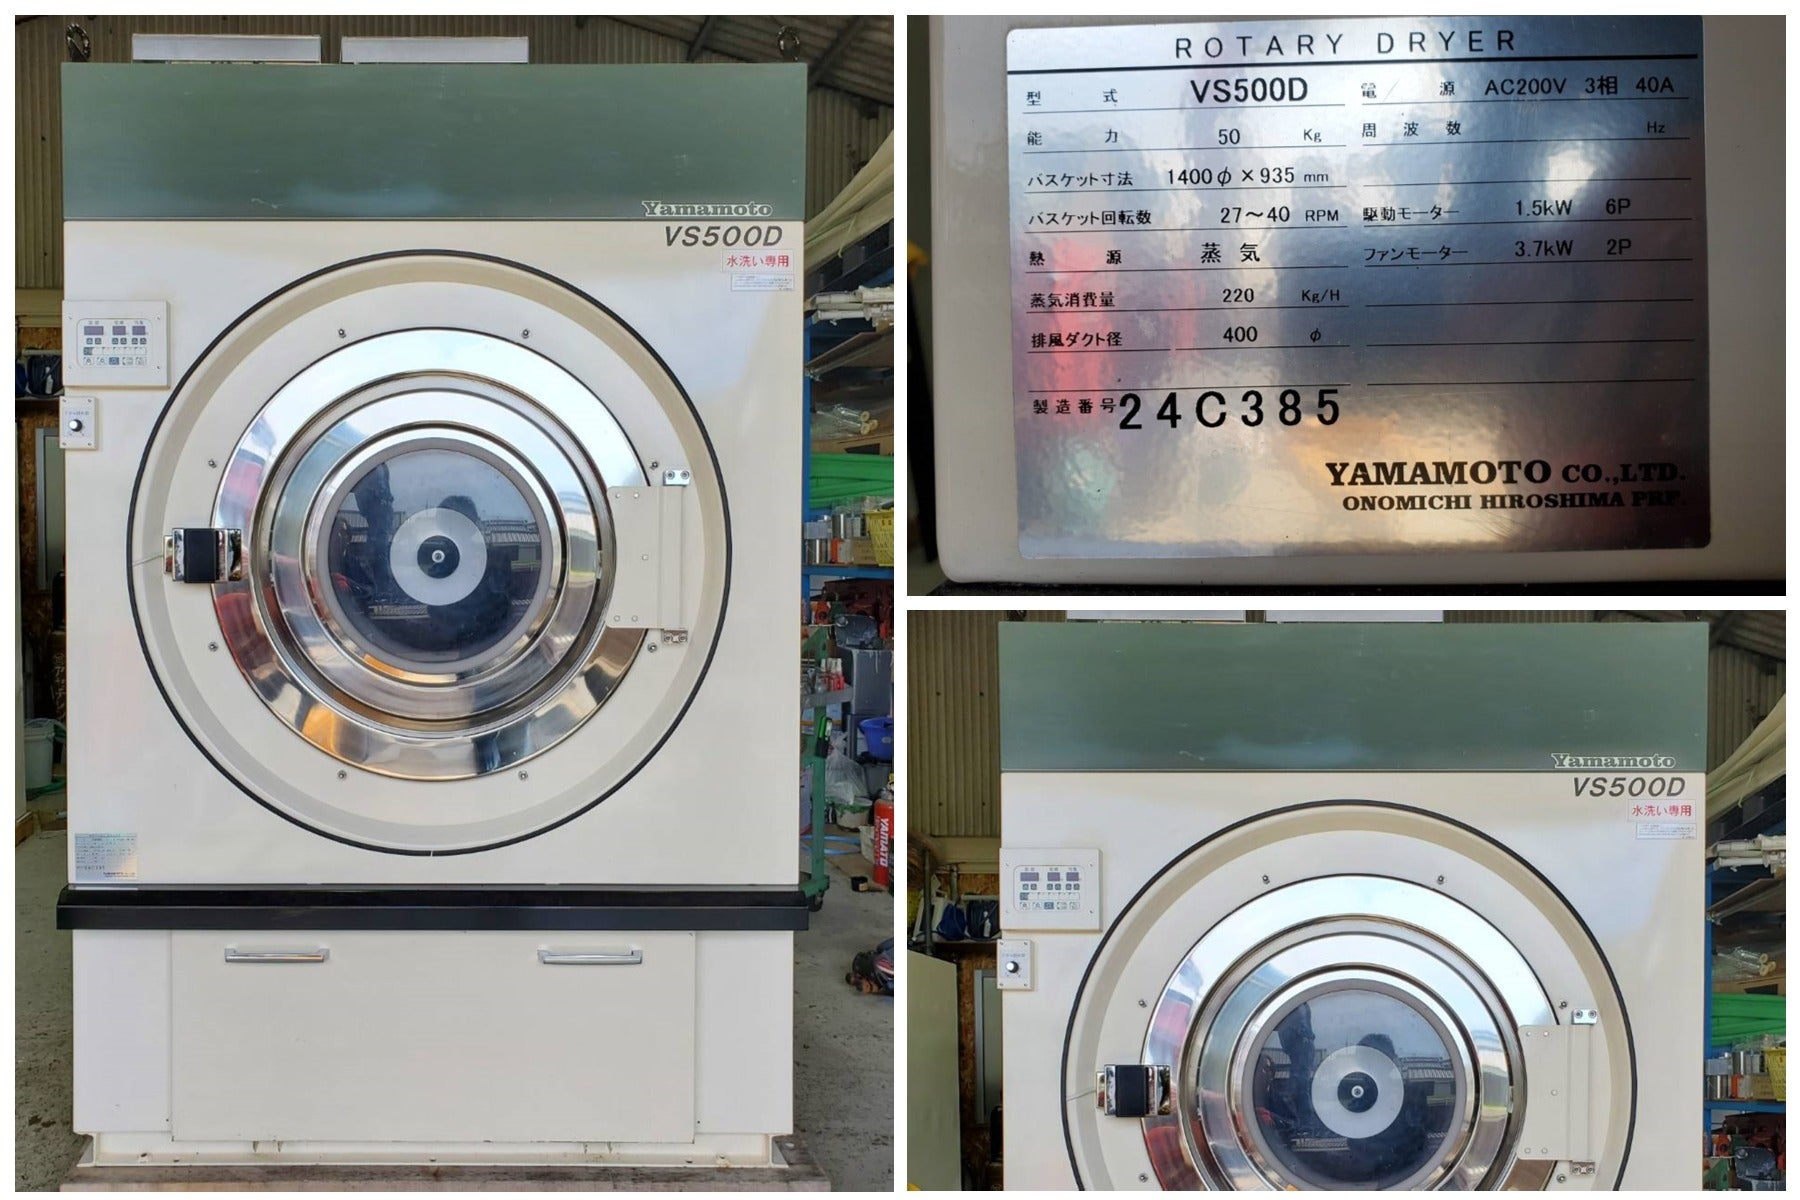 乾燥機 - カテゴリー別中古機械情報 | NB-washing machine RENTAL & SALE